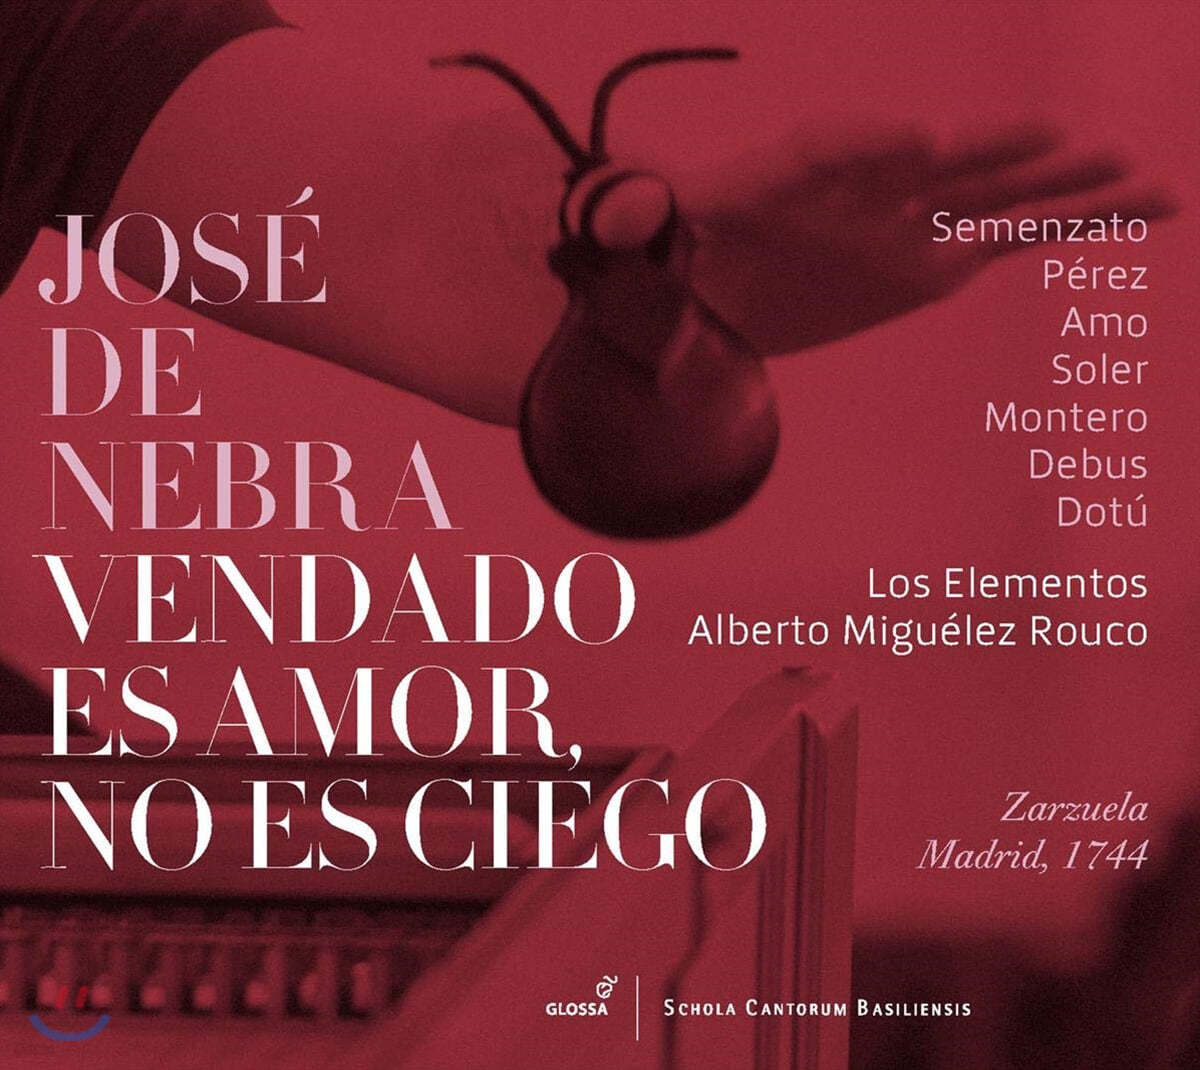 호세 데 네브라: 오페라 '눈 먼 사랑은 눈 멀지 않고' (Jose De Nebra: Vendado Es Amor, No Es  Ciego) - 예스24